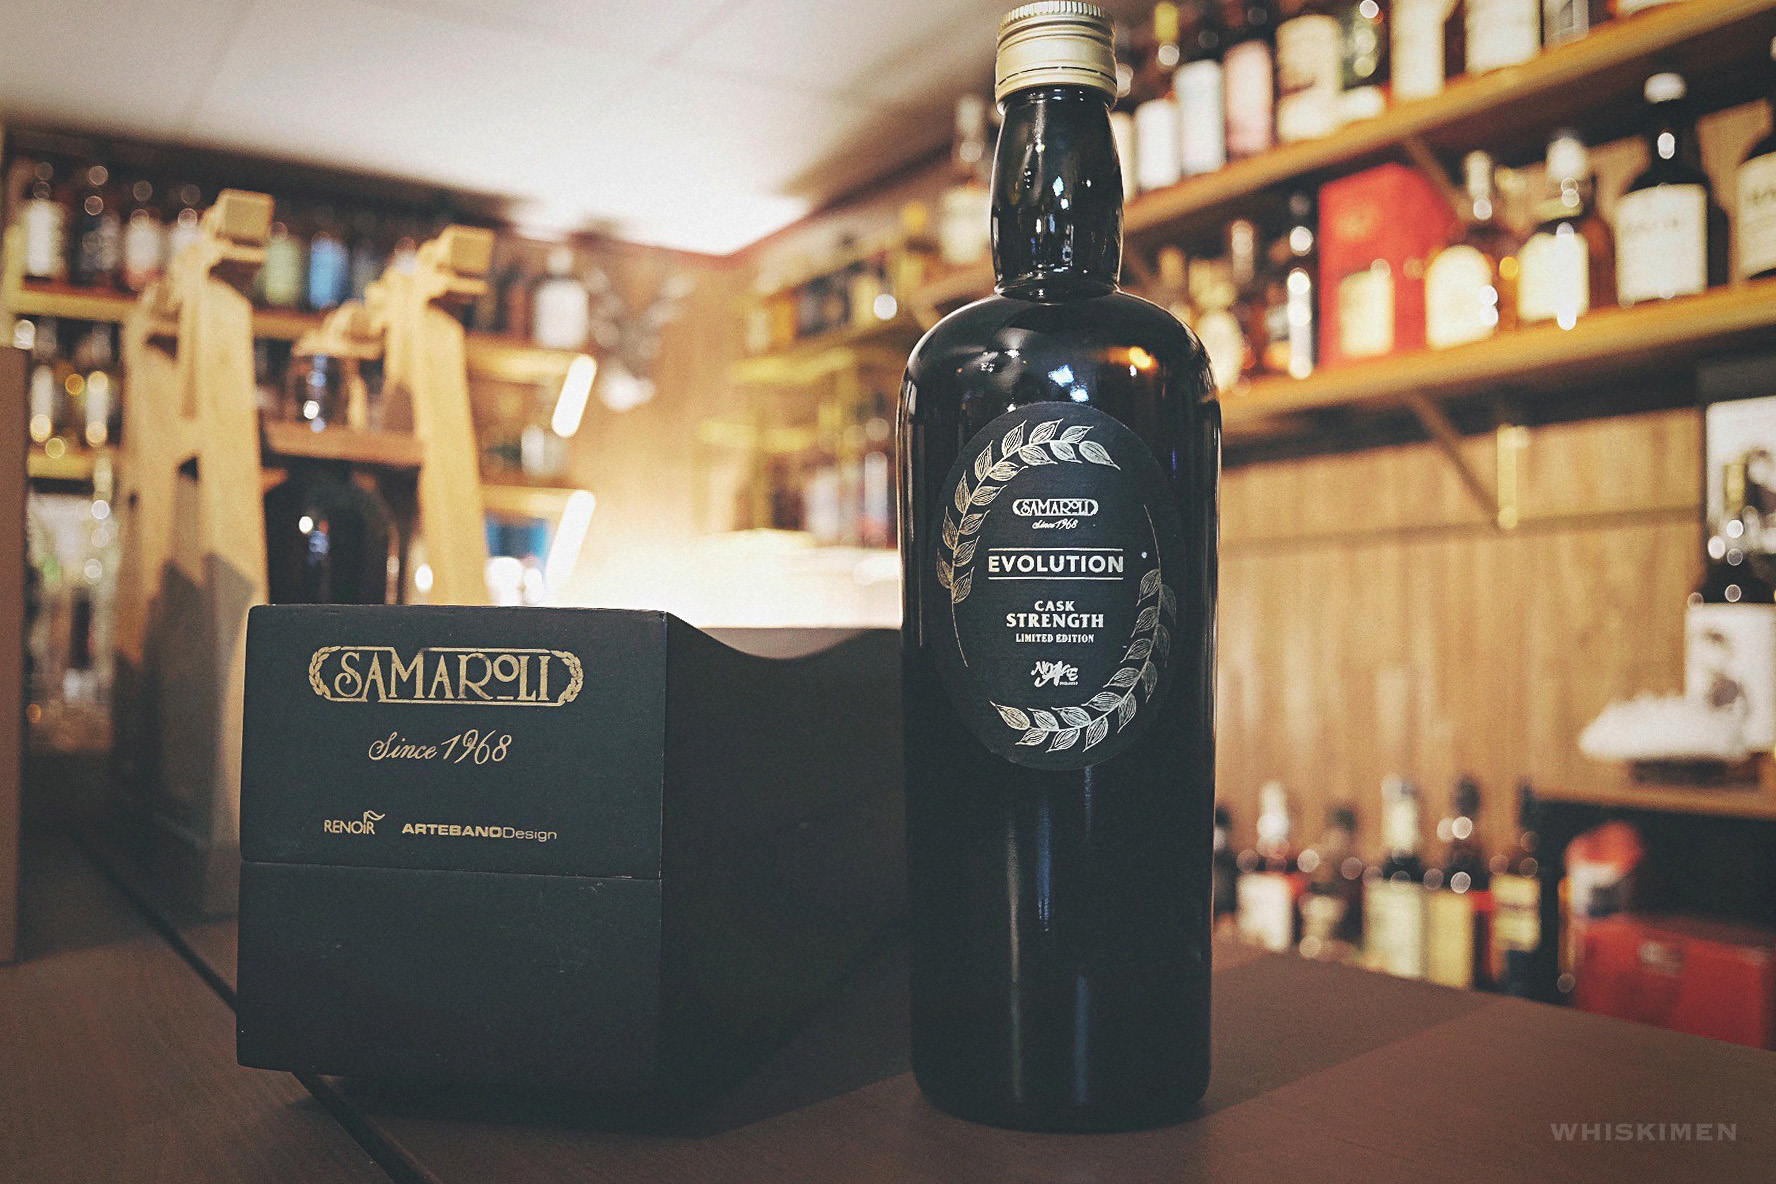 Samaroli Evolution Blended Malt Whisky 2013 (Cask Strength Limited Edition)